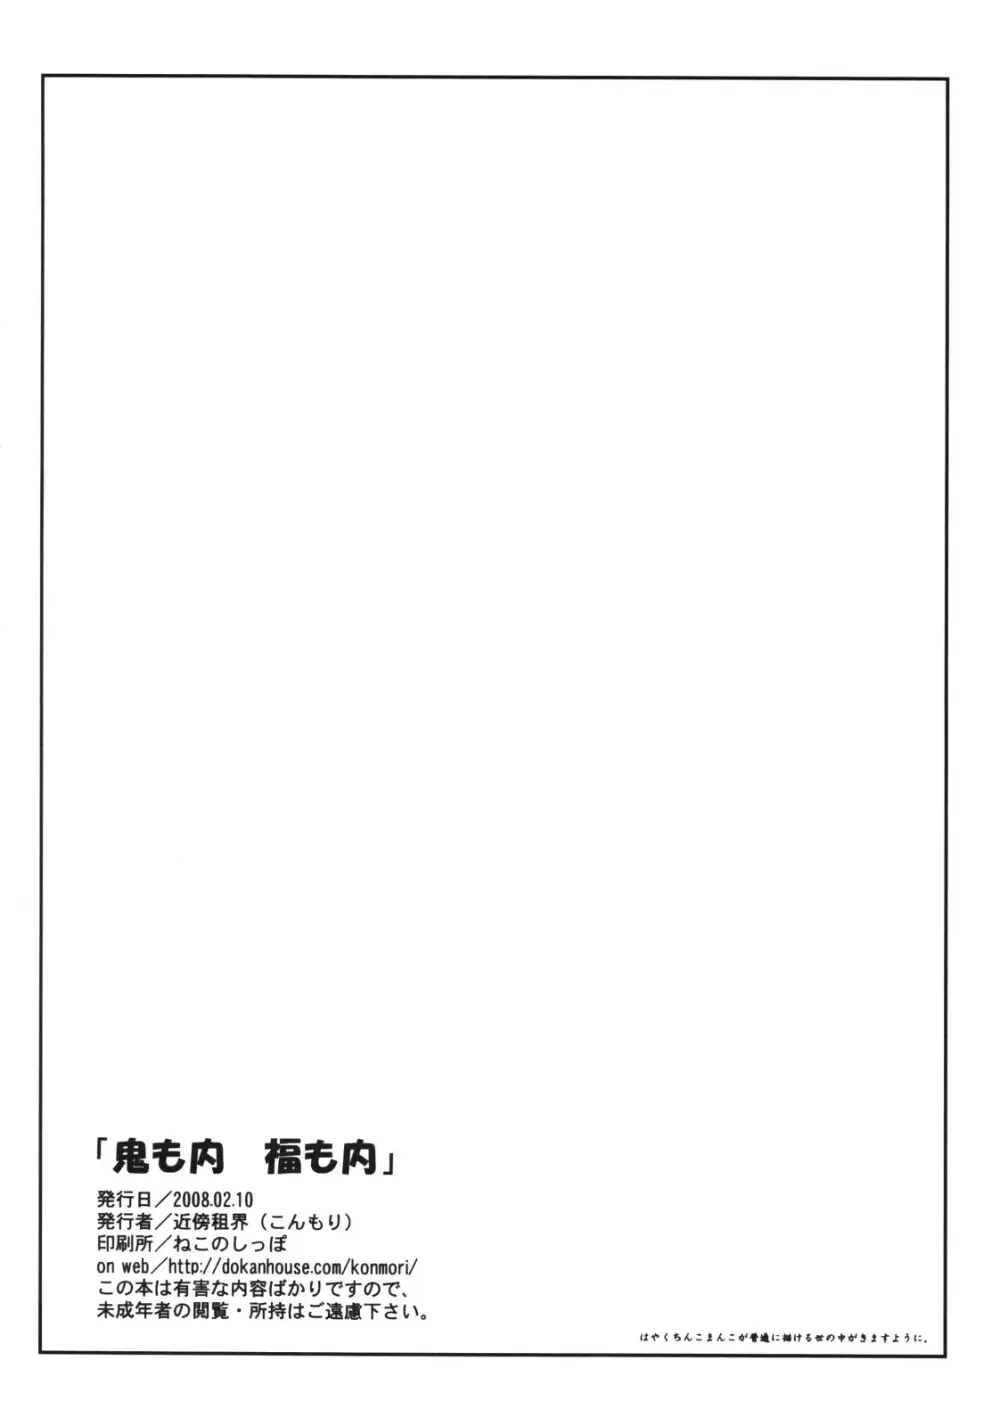 鬼も内 福も内 - page3